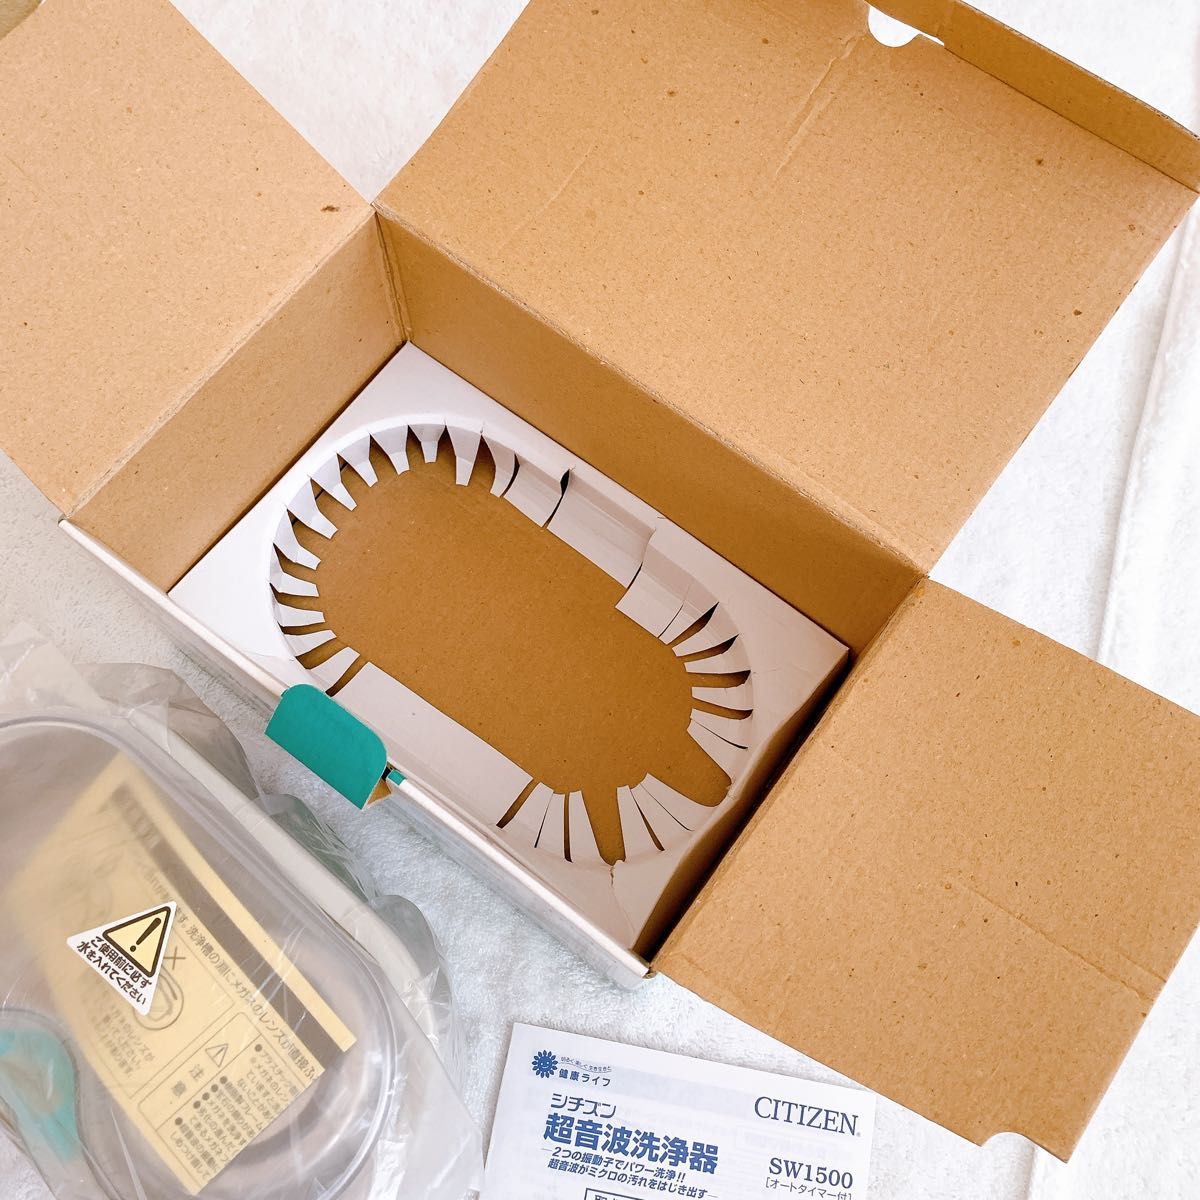 【新品】CITIZEN シチズン  超音波洗浄器 SW1500 メガネクリーナー 家庭用